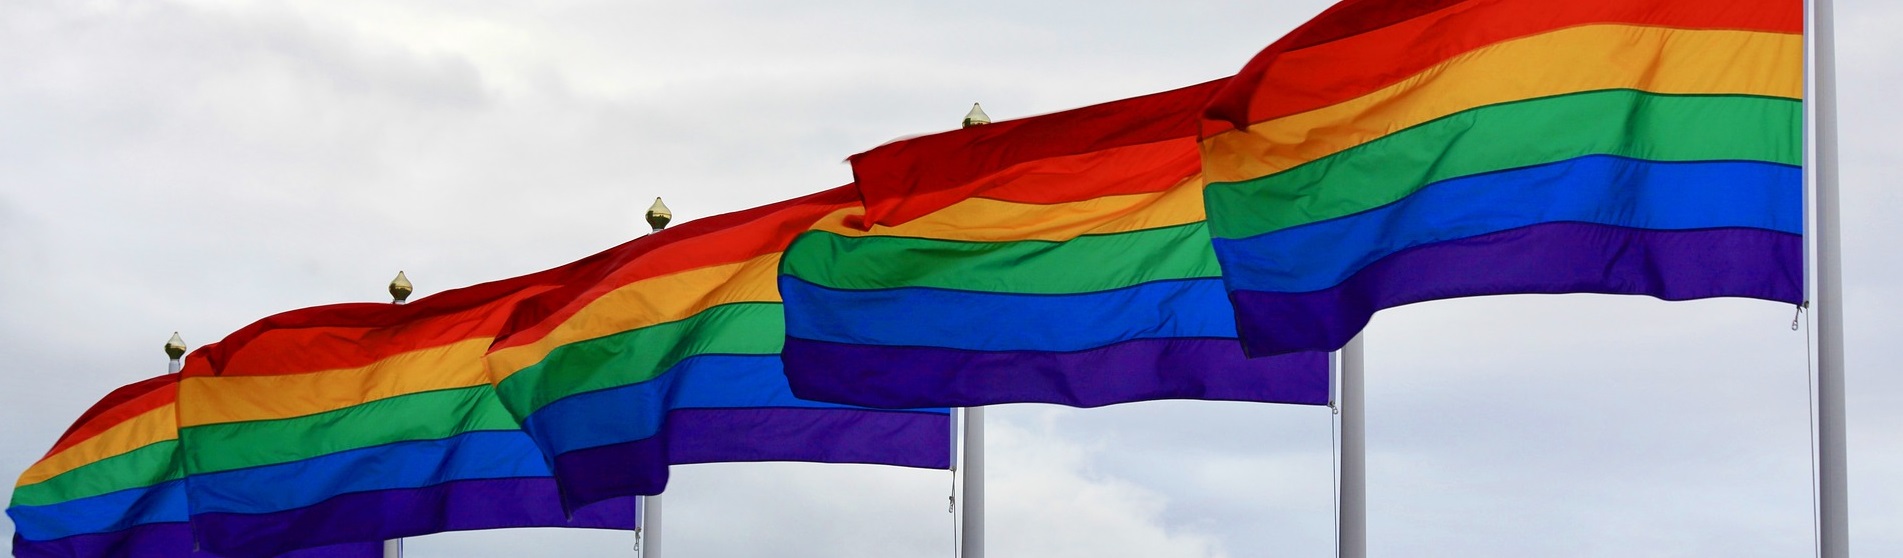 gay pride flags 2020